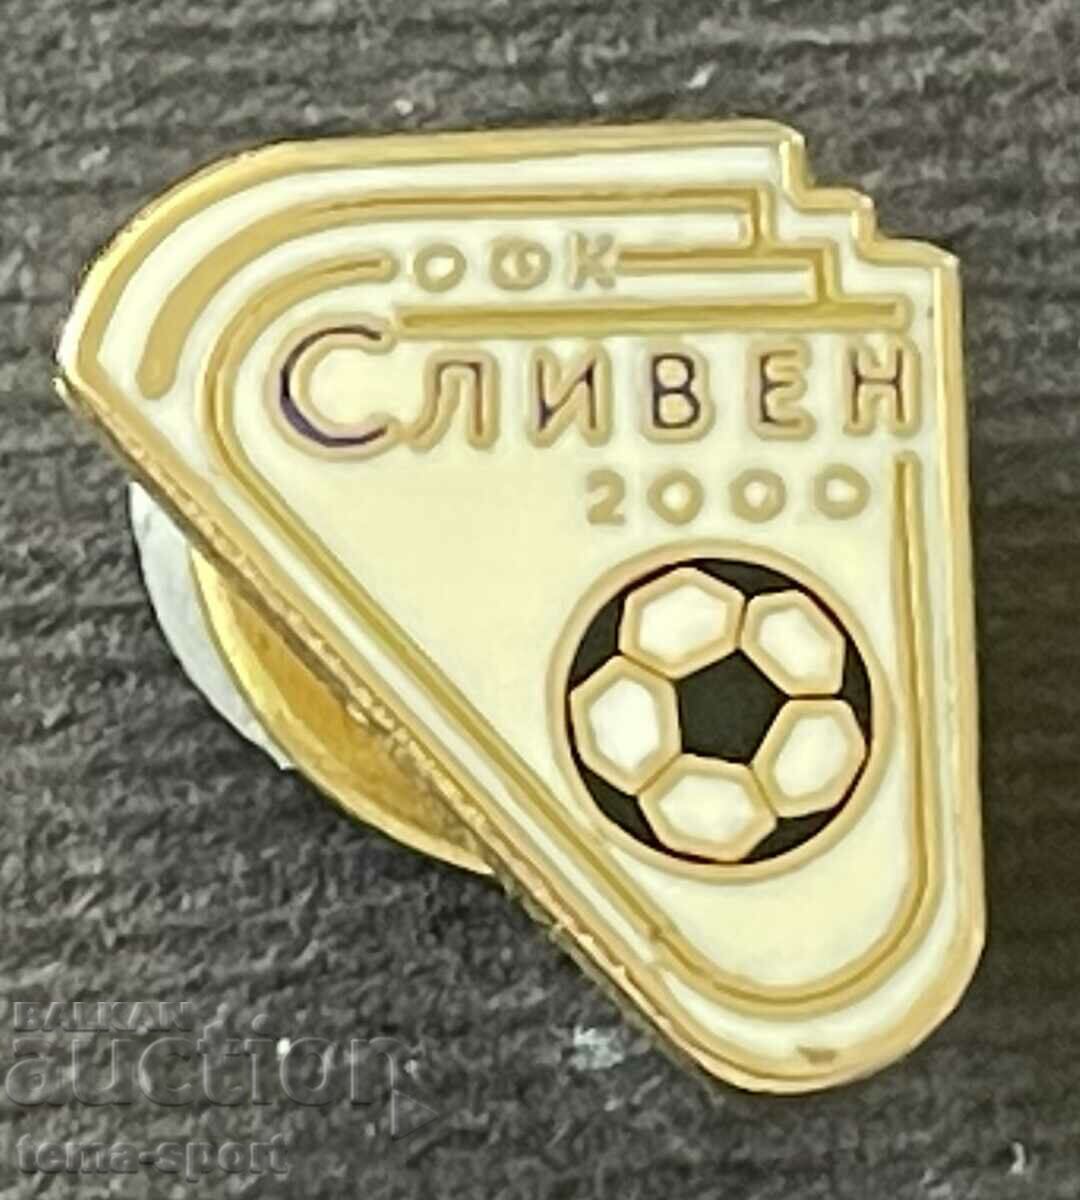 718 България знак Футболен клуб Сливен 2000 емайл